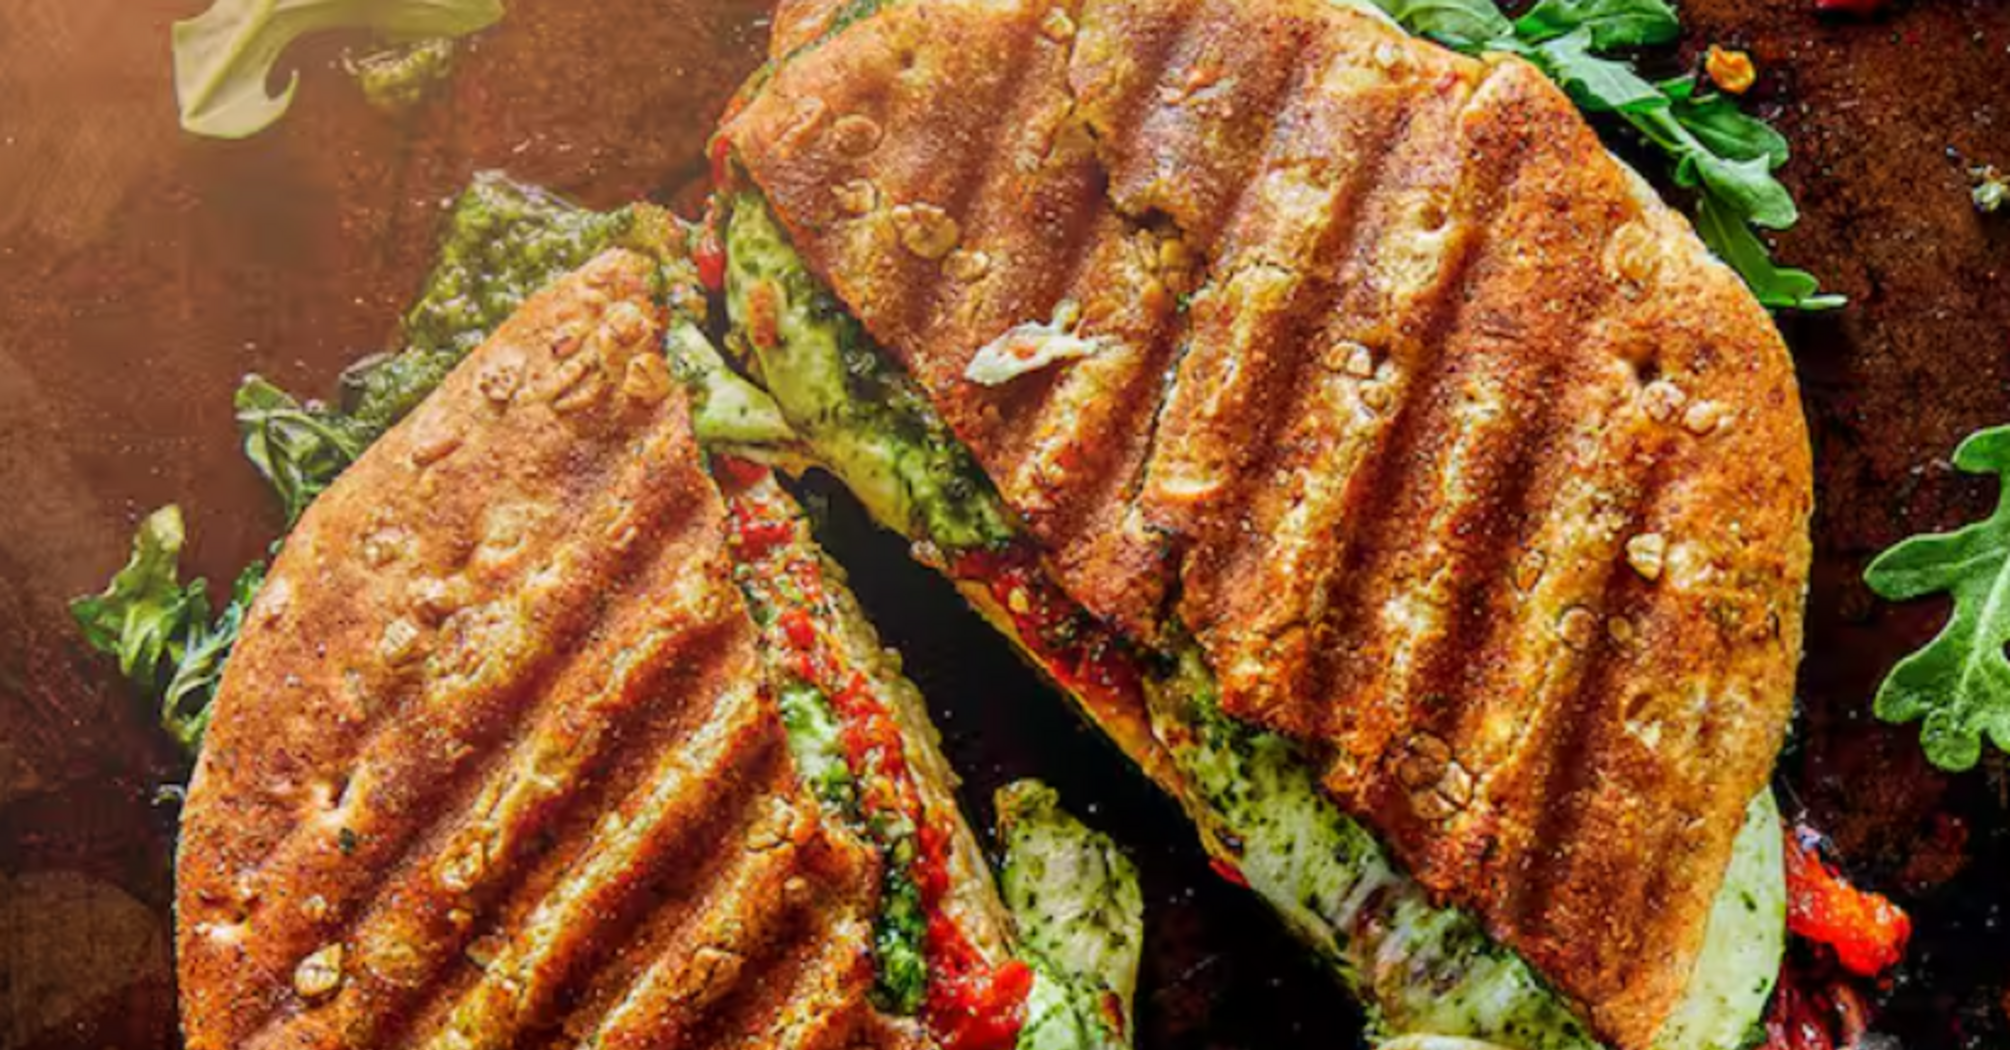 Любите панини?  3 совета, как приготовить итальянский сэндвич в домашних условиях